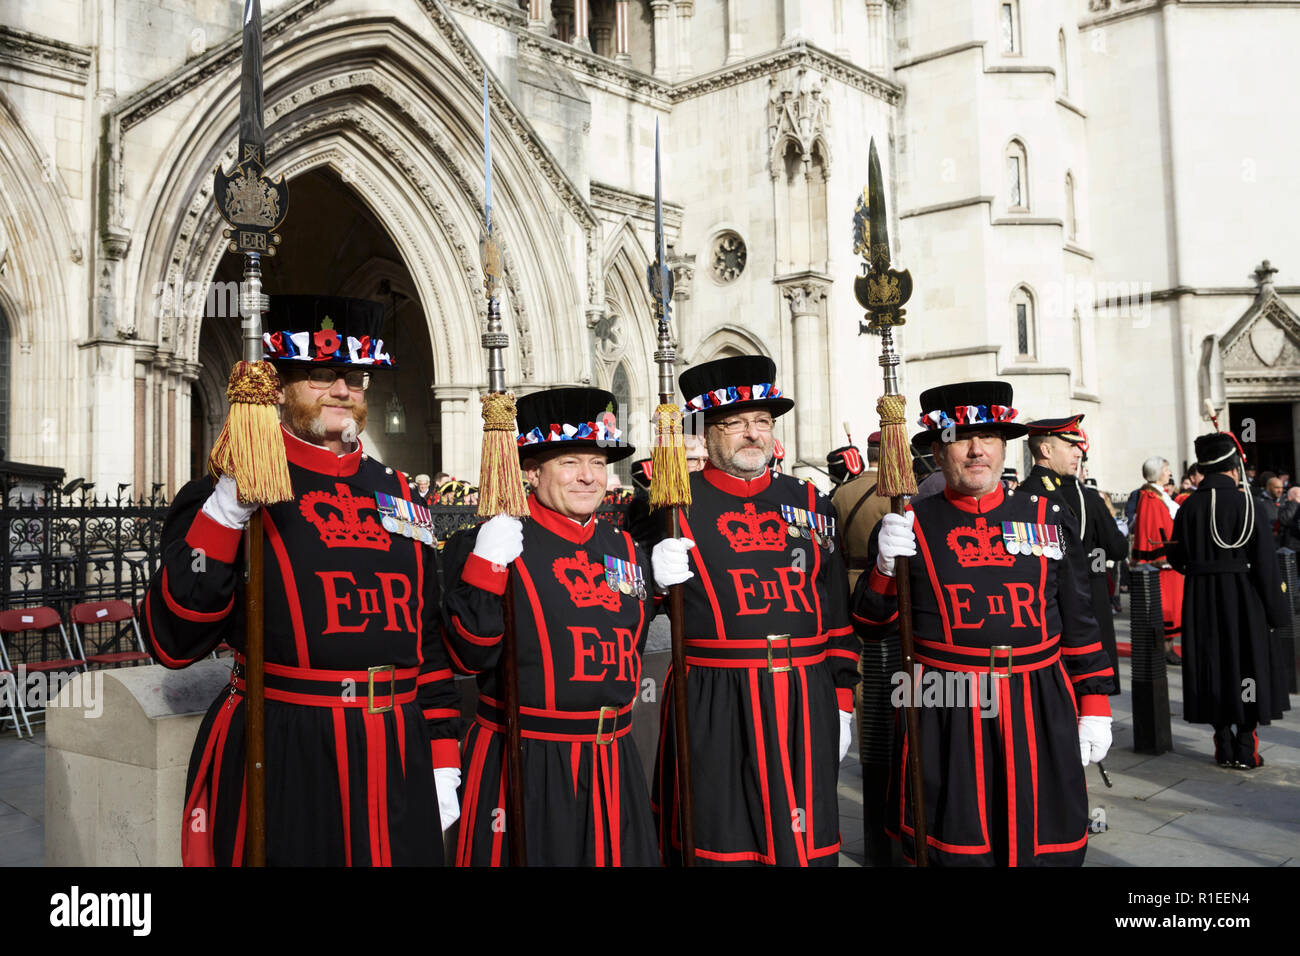 Los guardias Yeoman (también conocidos como Beefeaters) en uniforme ceremonial, fuera de los tribunales de justicia real, Londres, Inglaterra, Reino Unido. Foto de stock